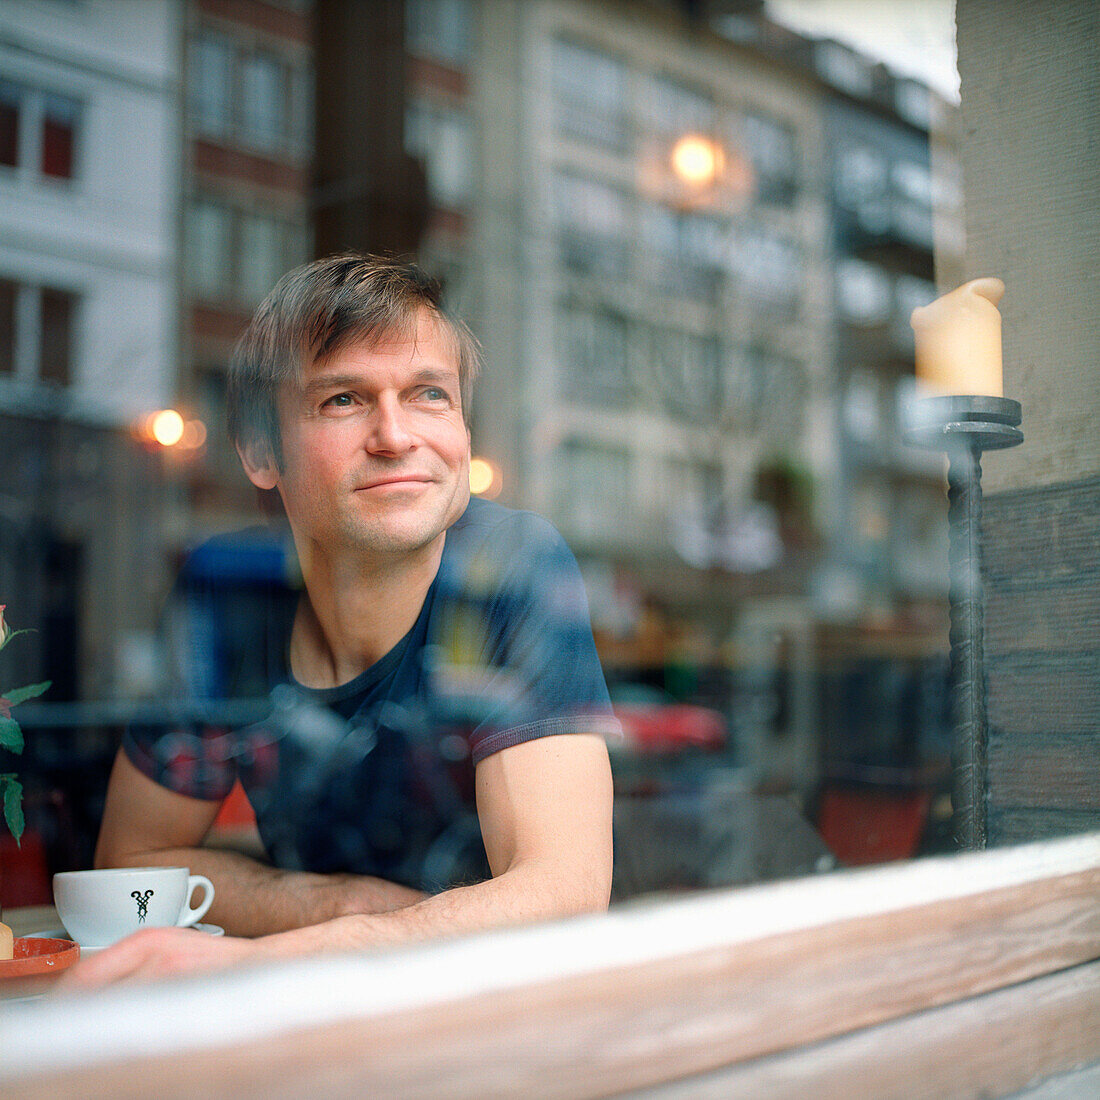 Mann sitzt im Café, Deutscher, Deutschland, Tasse, aus dem Fenster schauen, lächeln, zufrieden, entspannt, in Gedanken, beobachten, Freizeit, genieþen